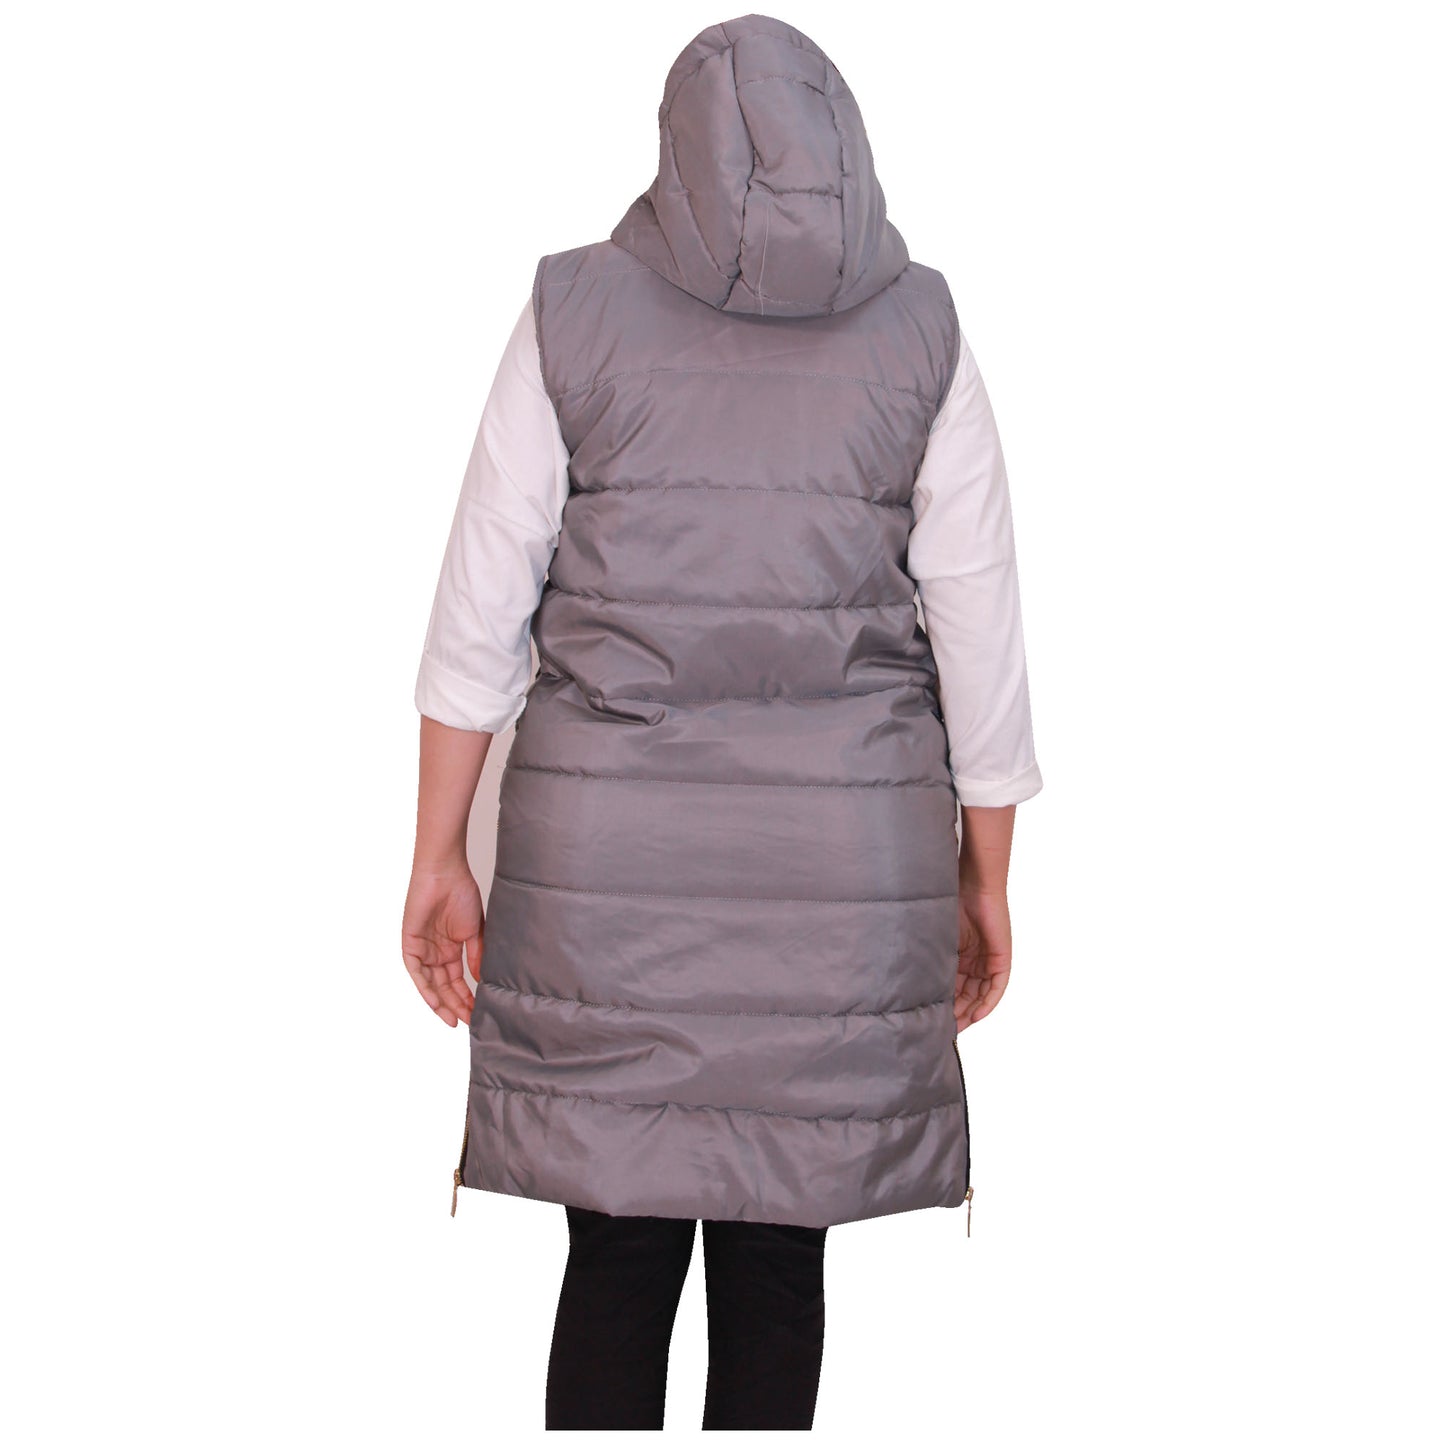 Ladies Jacket Long Gilet Women Body Warmer Hooded Long Length Rain Proof Shower Proof